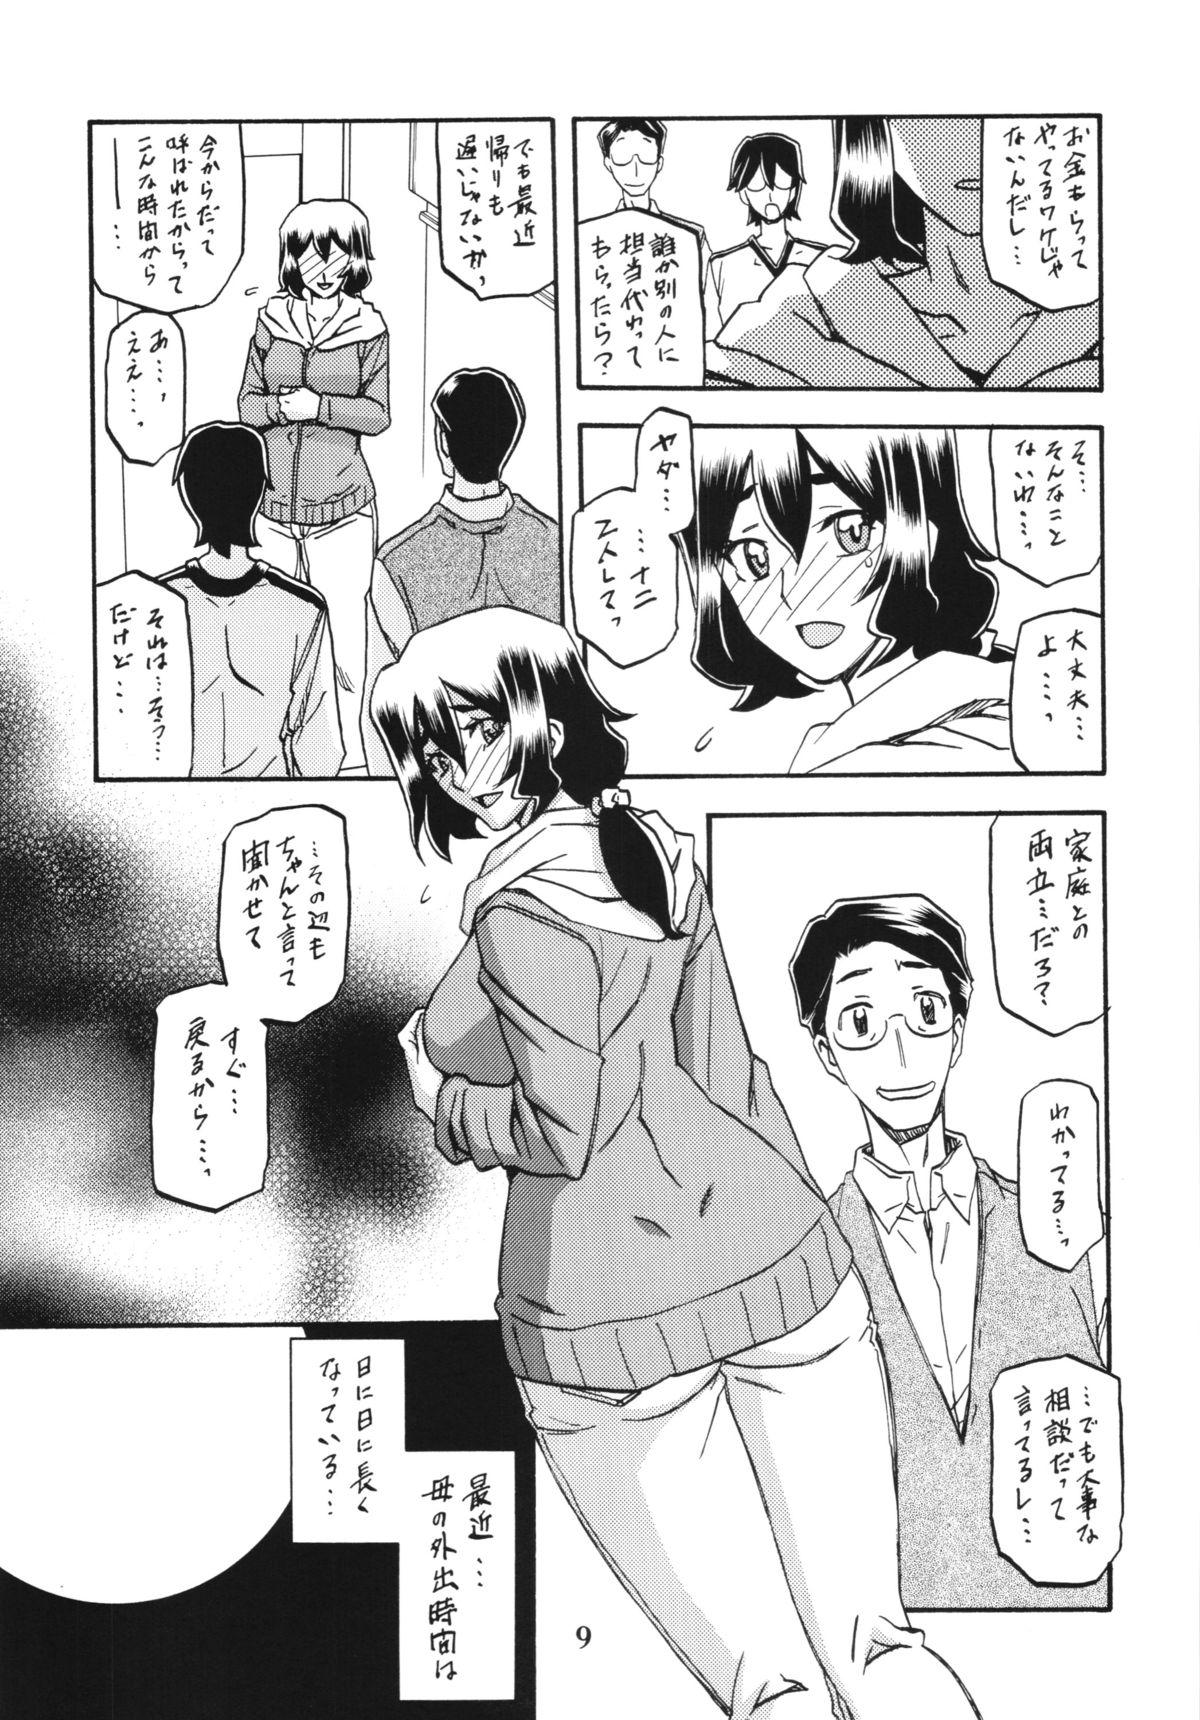 Erotica Akebi no Mi - Chizuru Uniform - Page 9